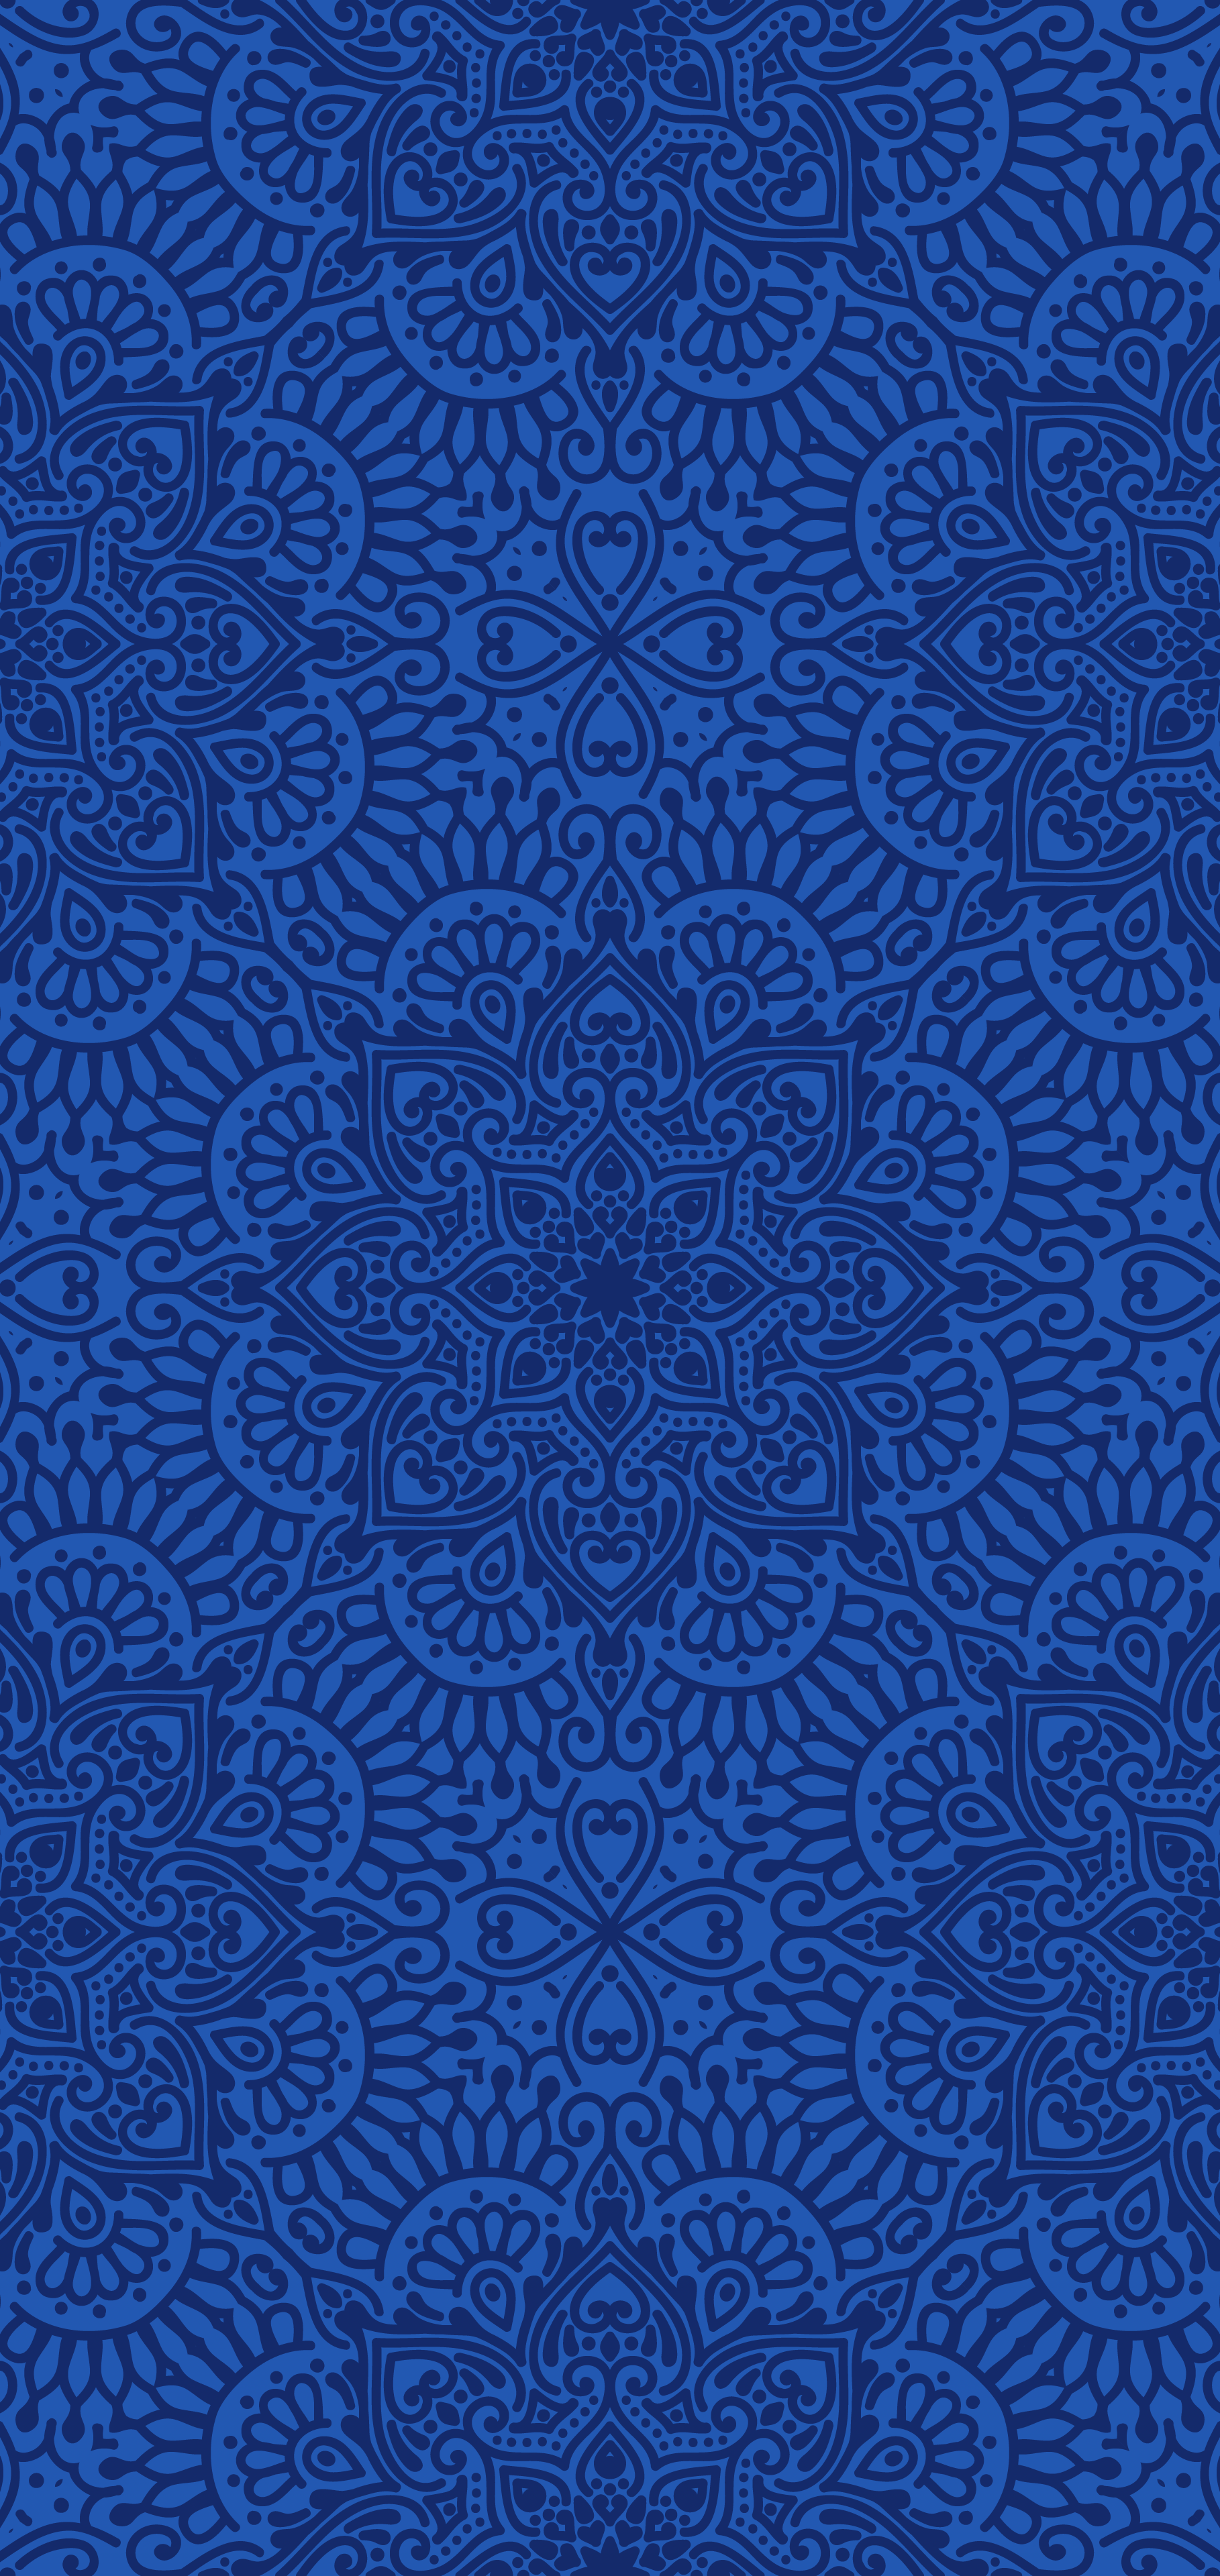 Iphone wallpaper HD - Luxury blue pattern